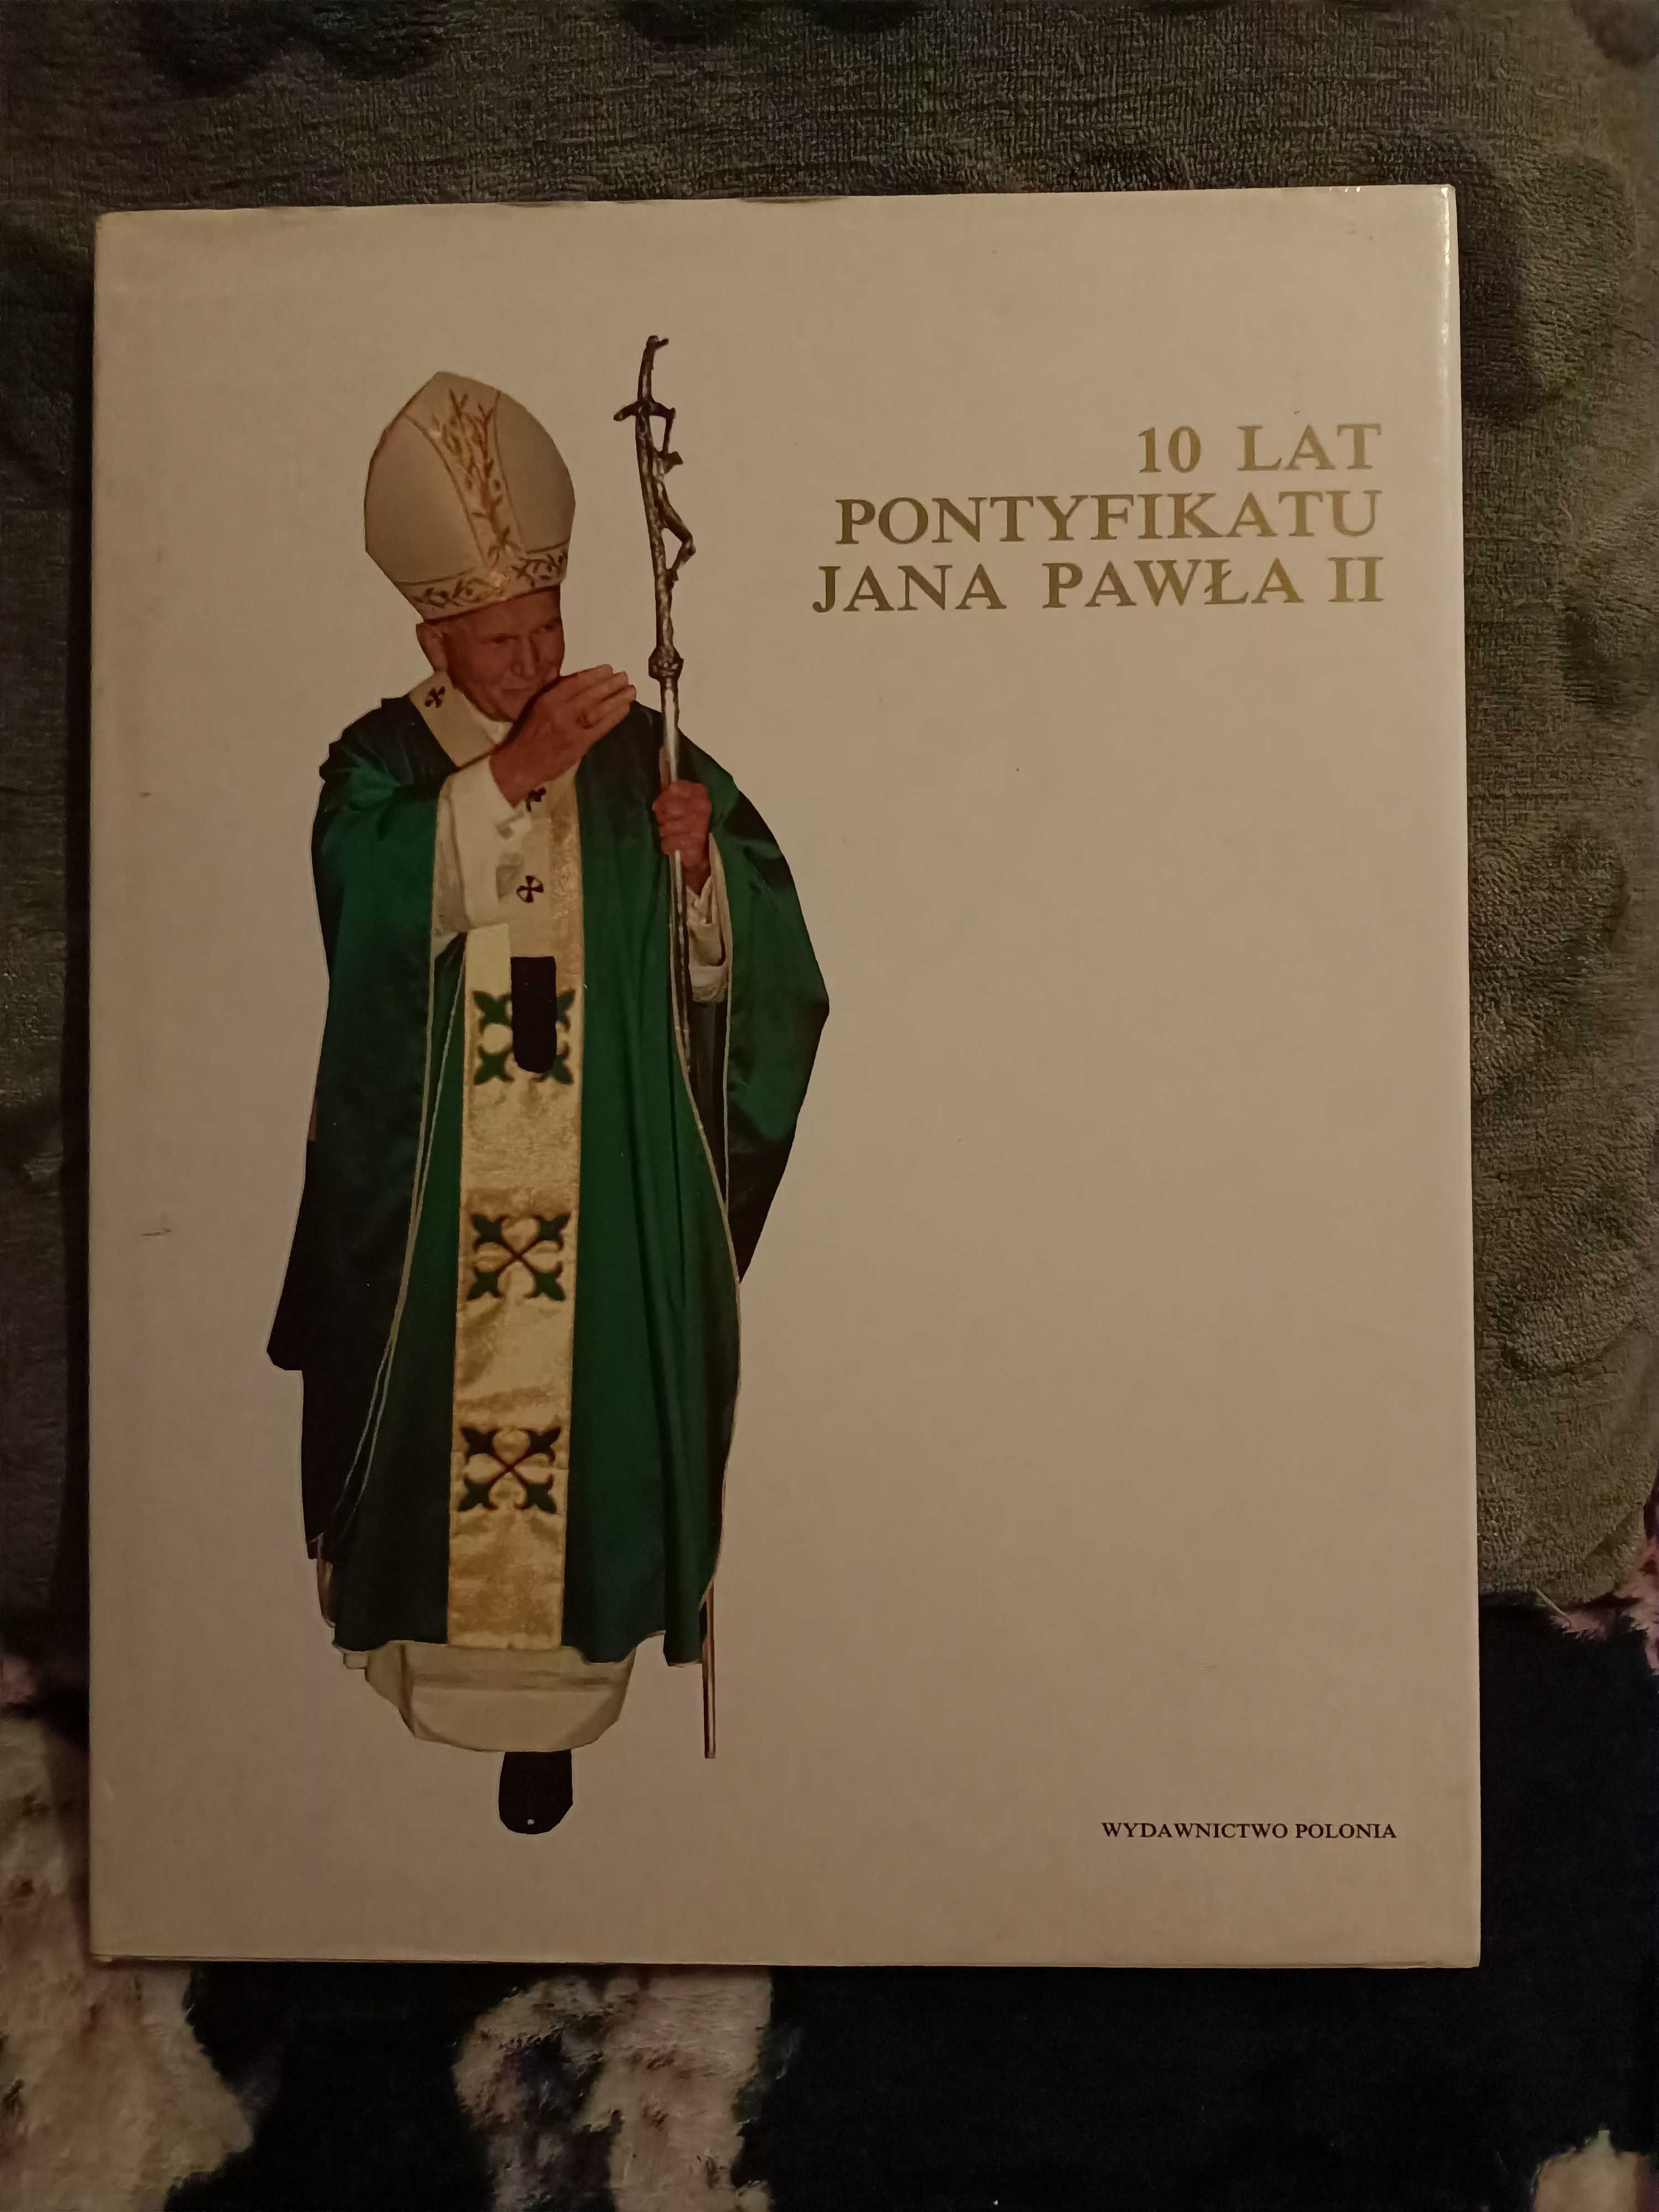 10 lat pontyfikatu Jana Pawła II